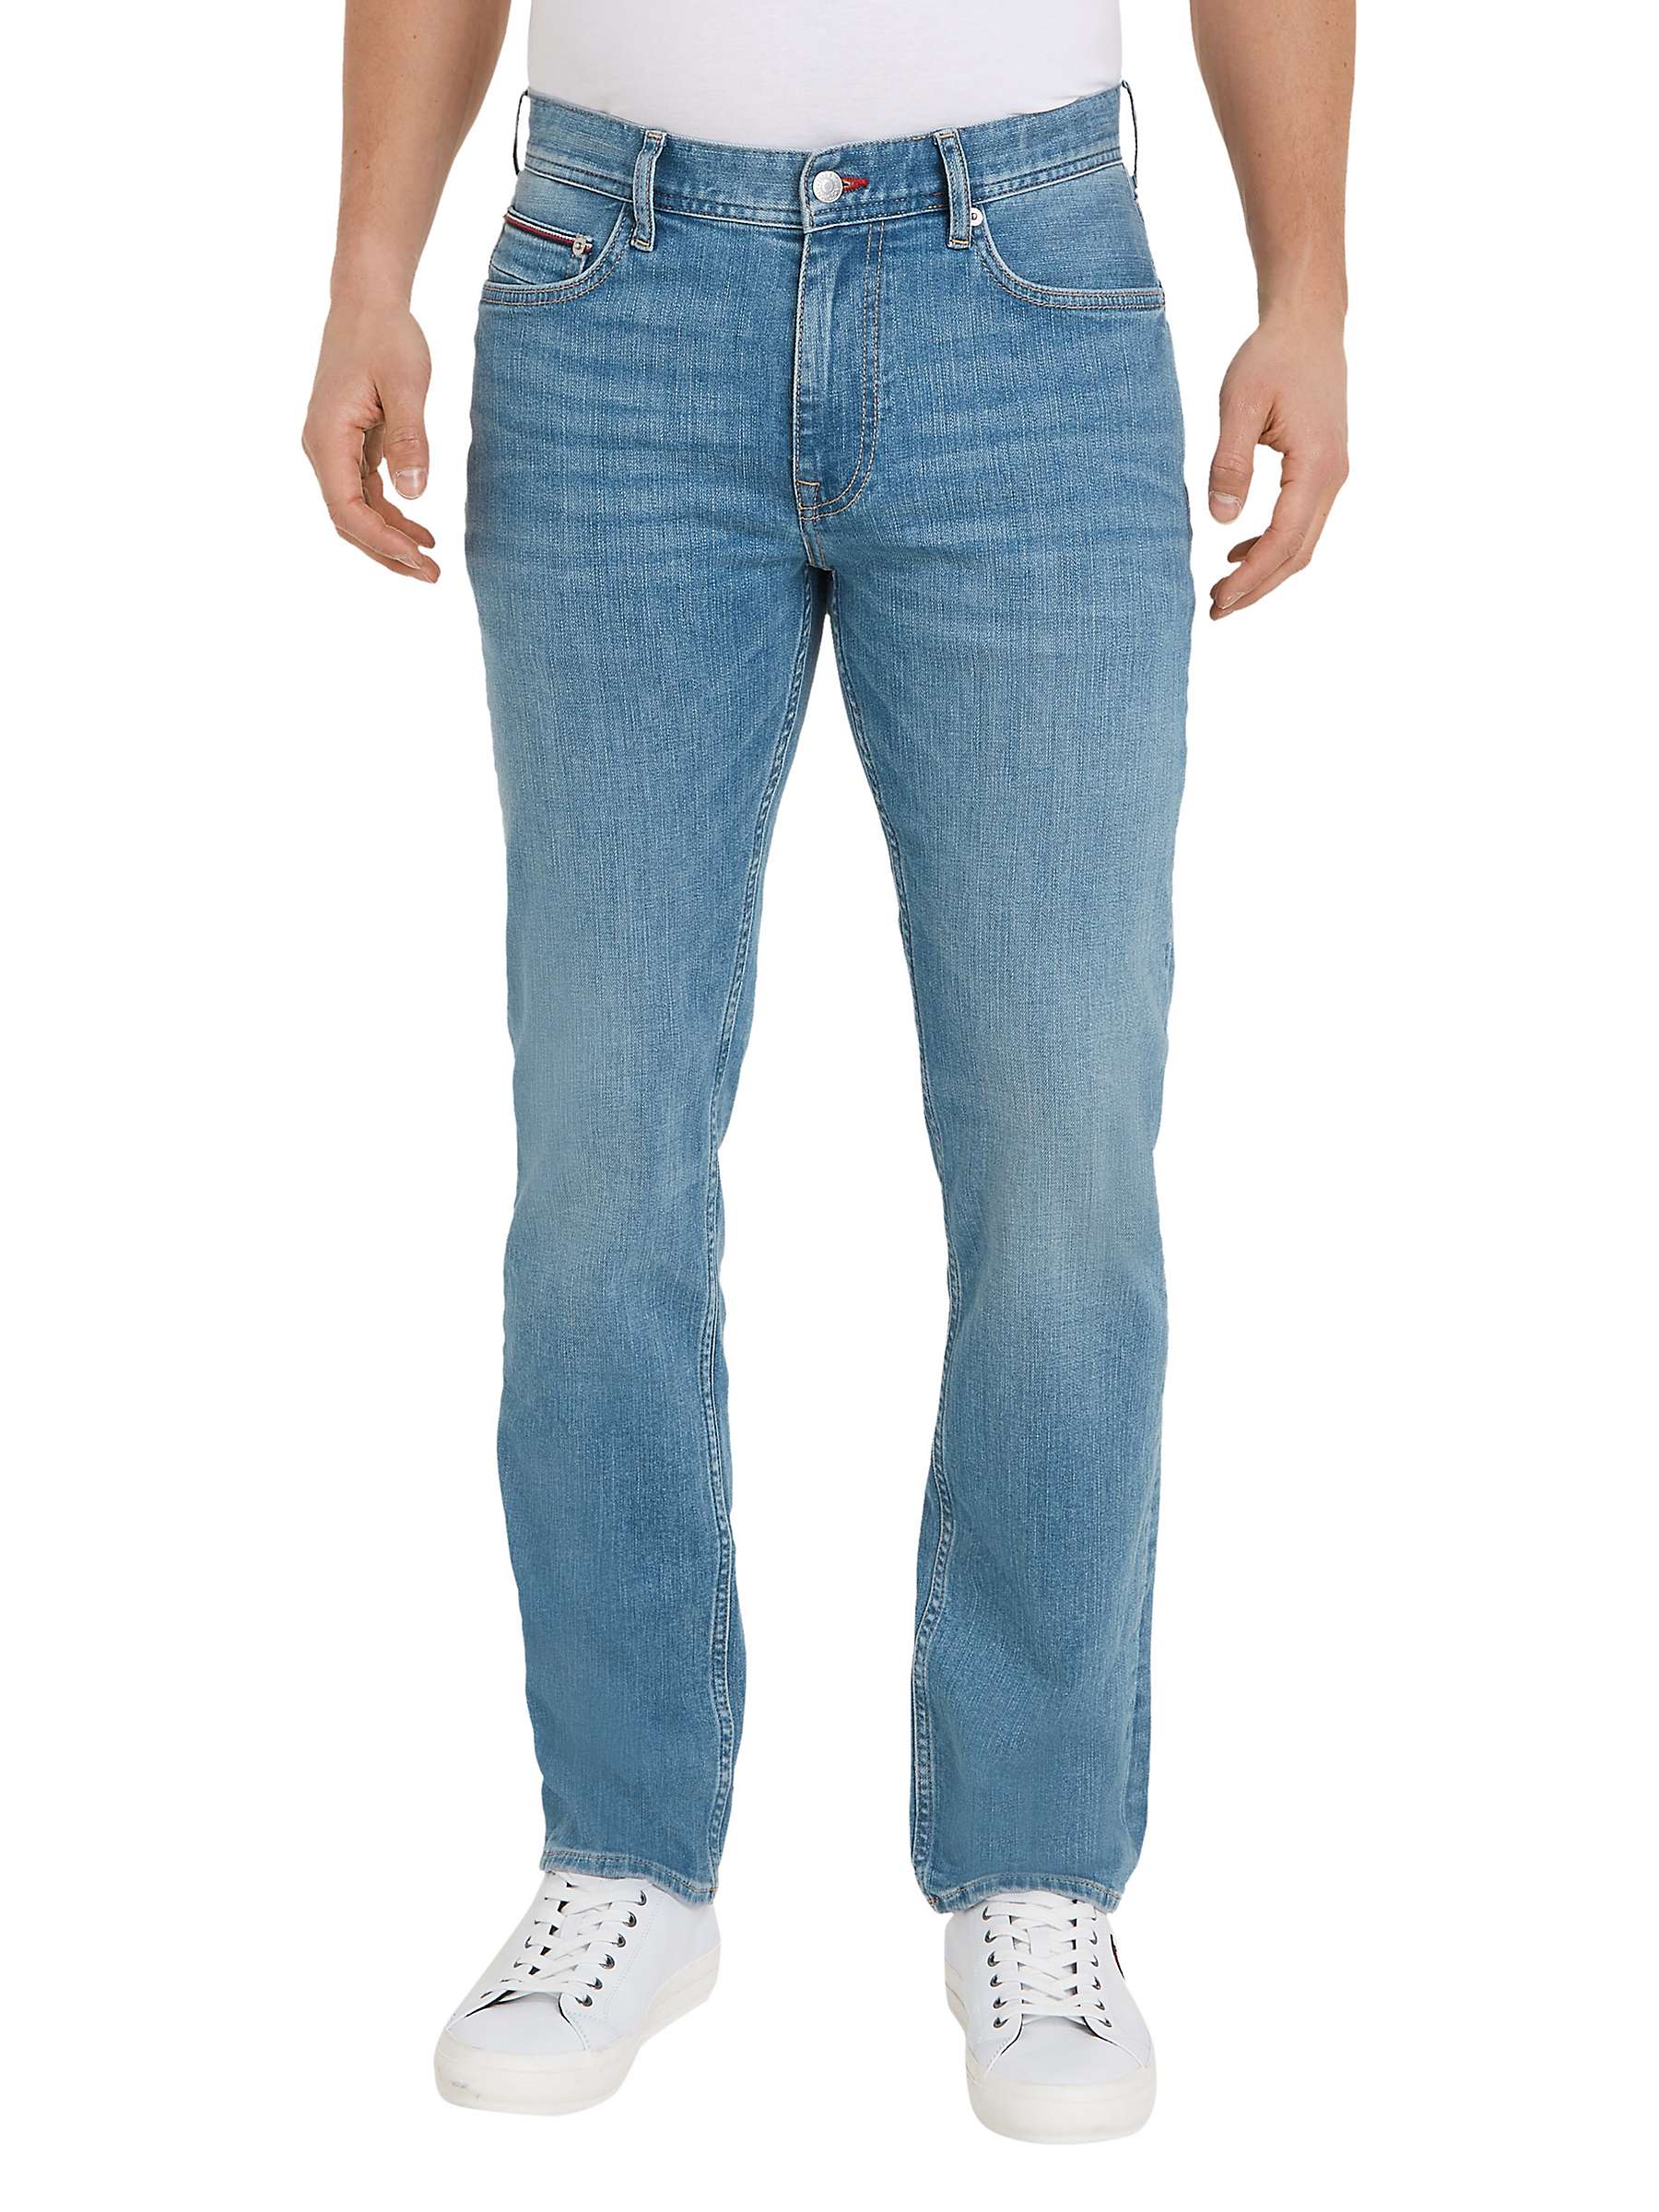 Buy Tommy Hilfiger Madison Jeans, Blue Online at johnlewis.com